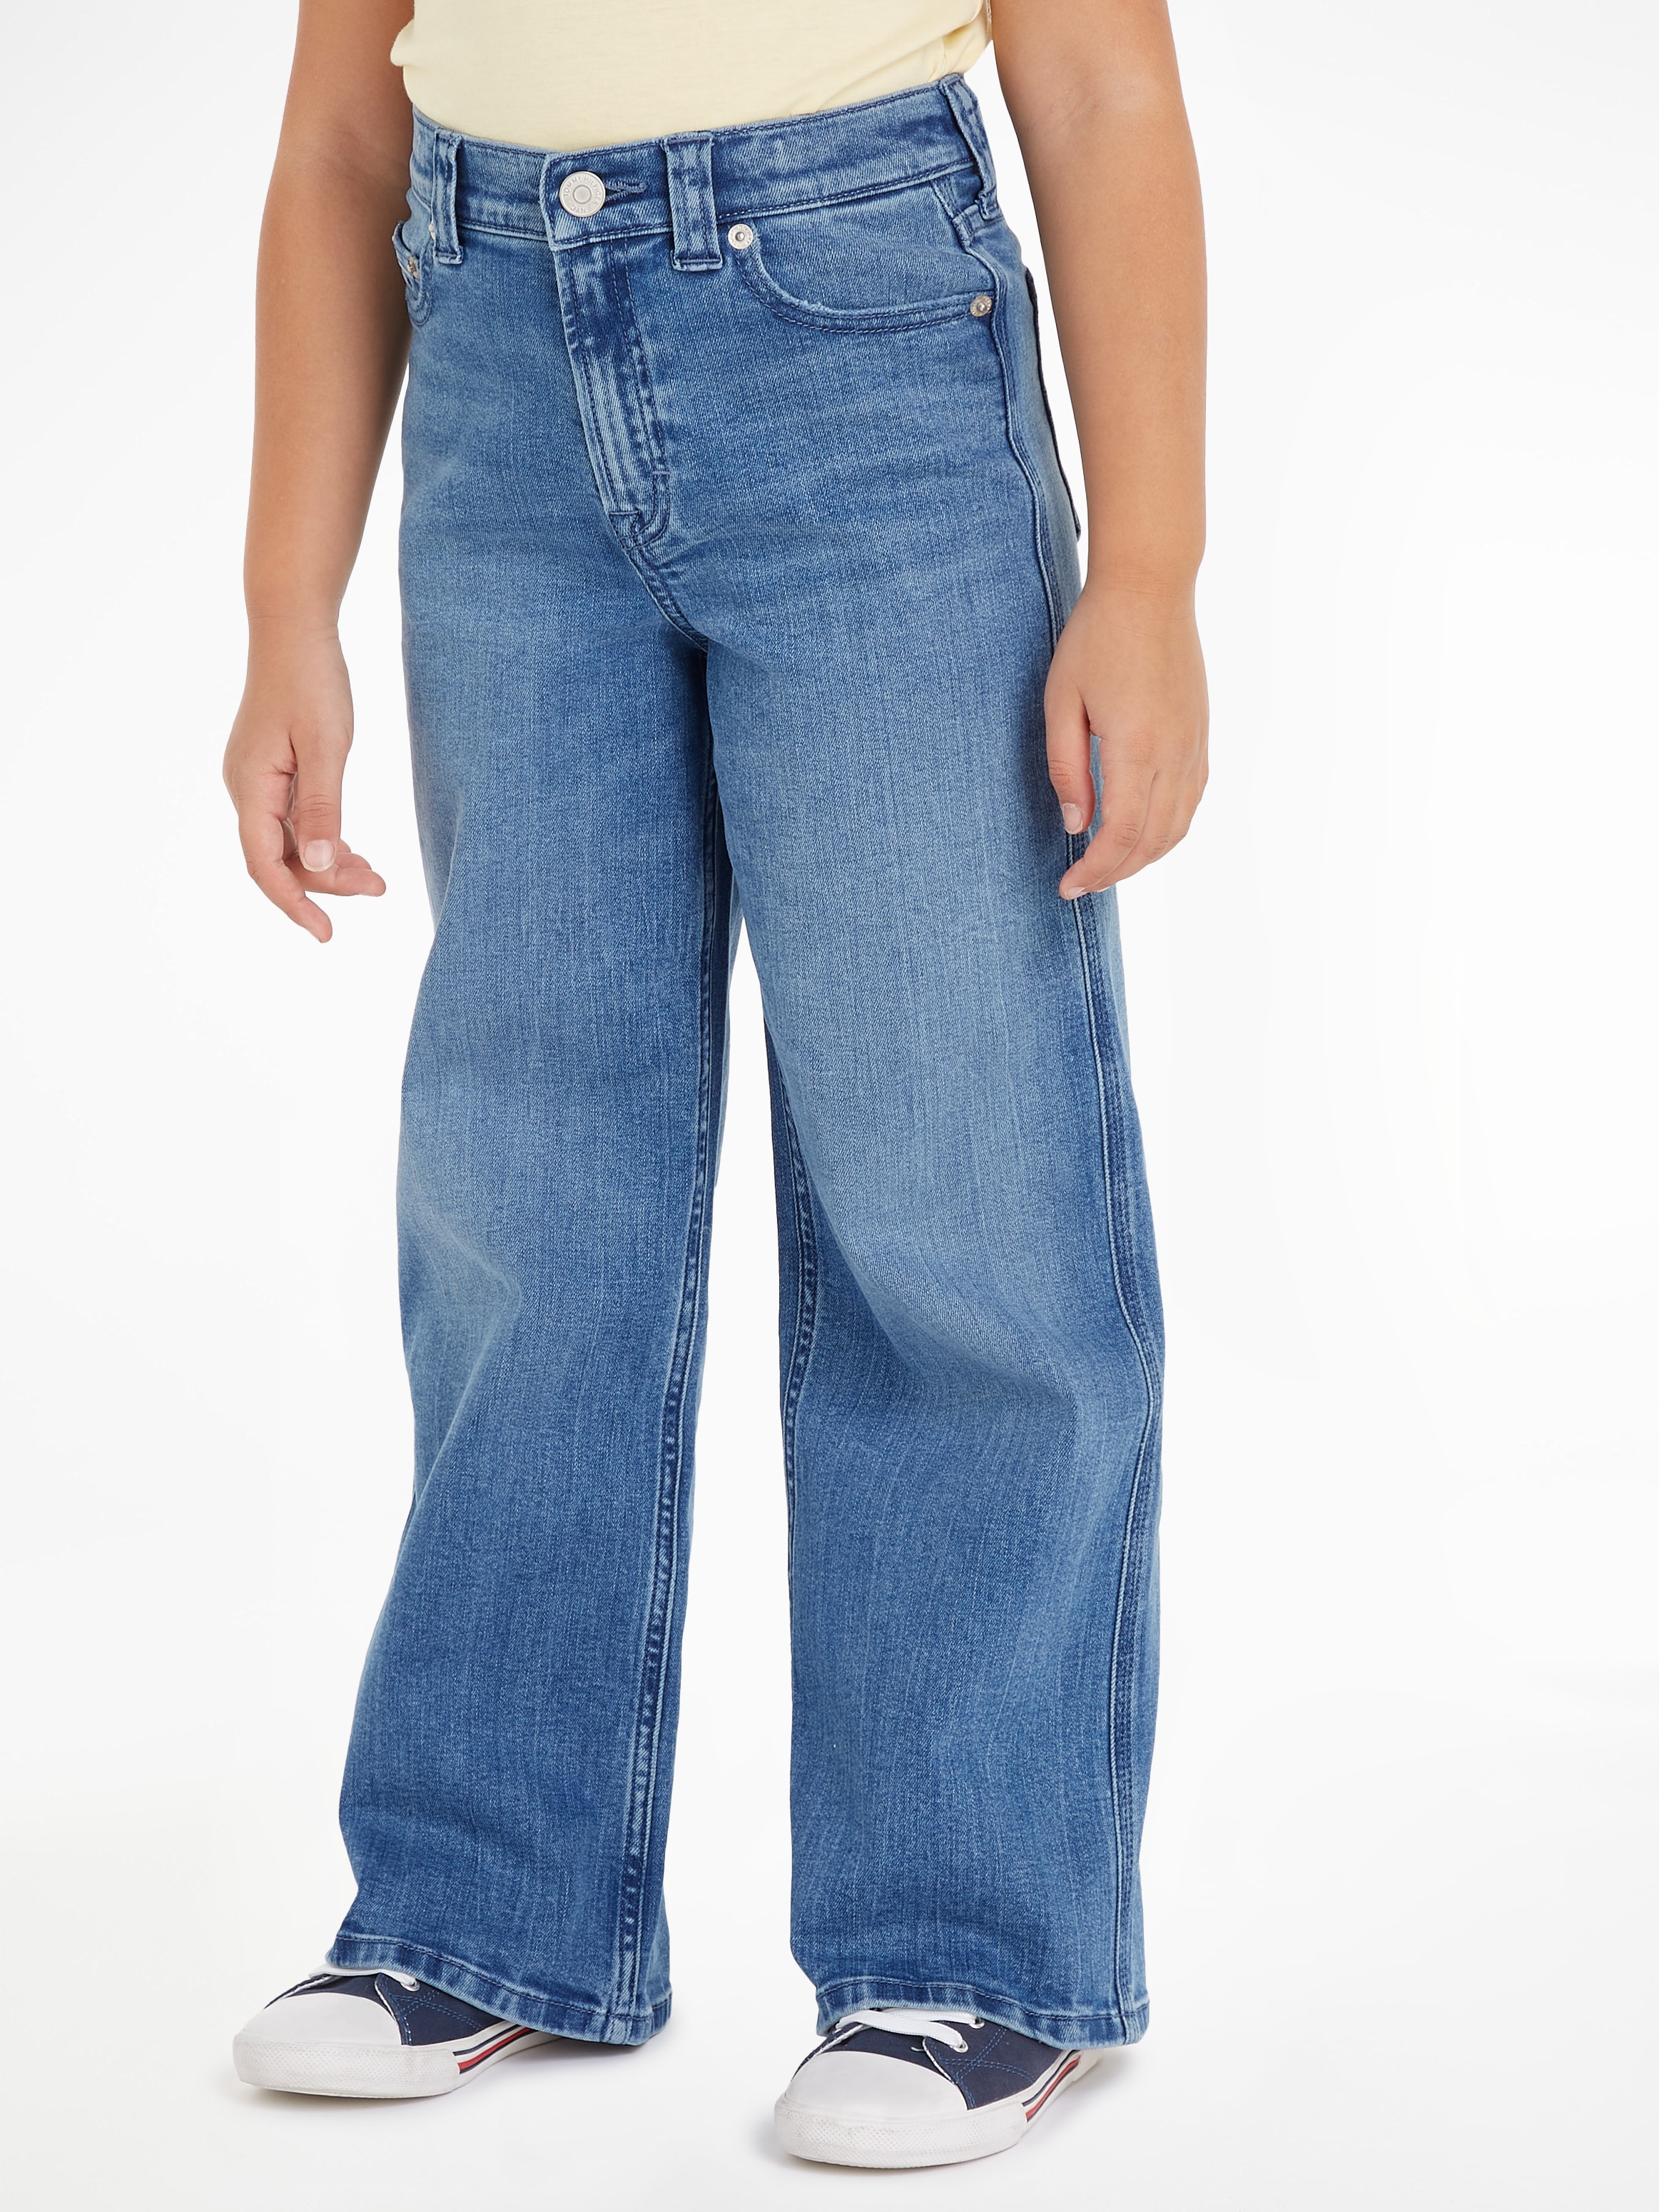 Tommy Hilfiger Straight-Jeans »MABEL VINTAGE STRAIGHT DENIM«, Kinder bis 16 Jahre mit Logostickerei